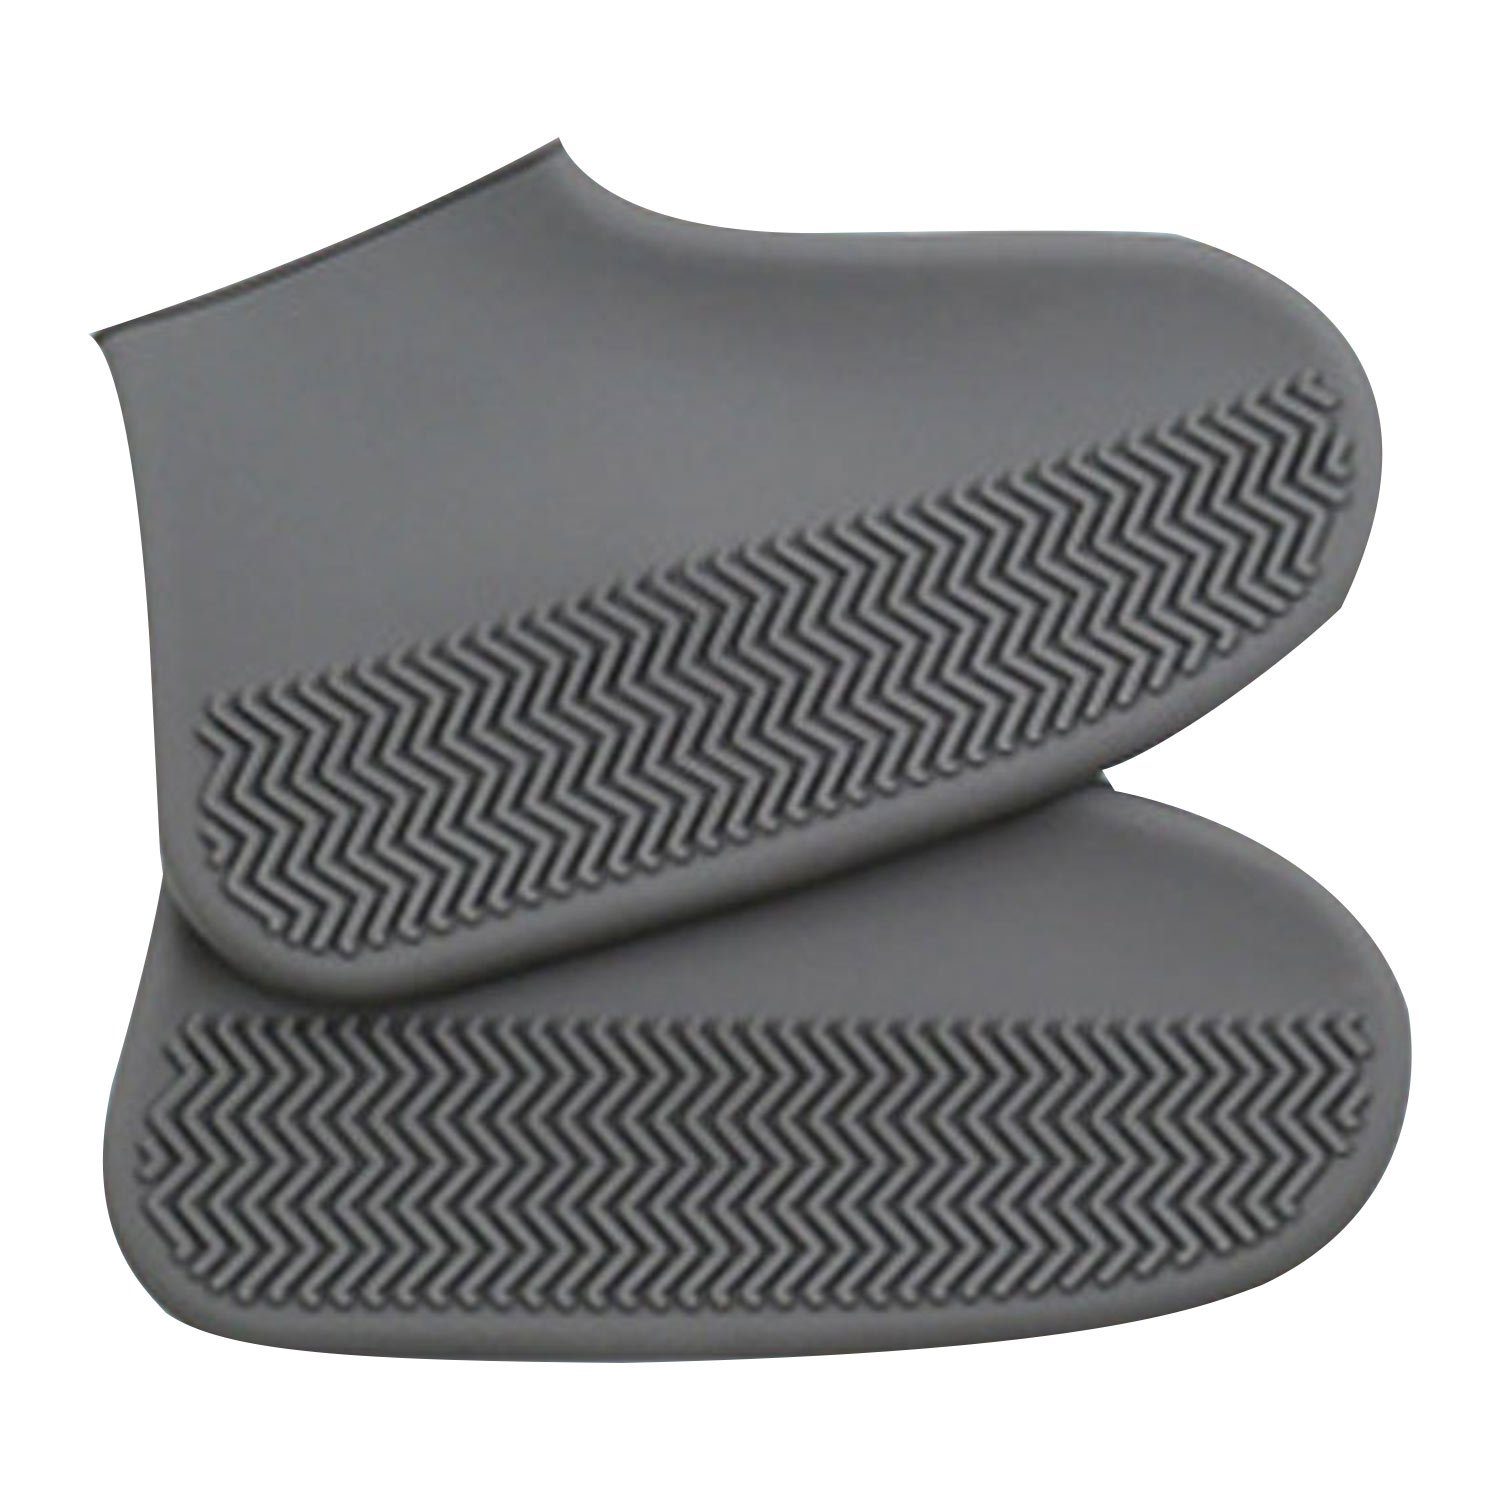 Verkaufserfolg Nr. 1 MAGICSHE Schuhüberzieher Unisex Wasserdichte Silikon Überschuhe Grau